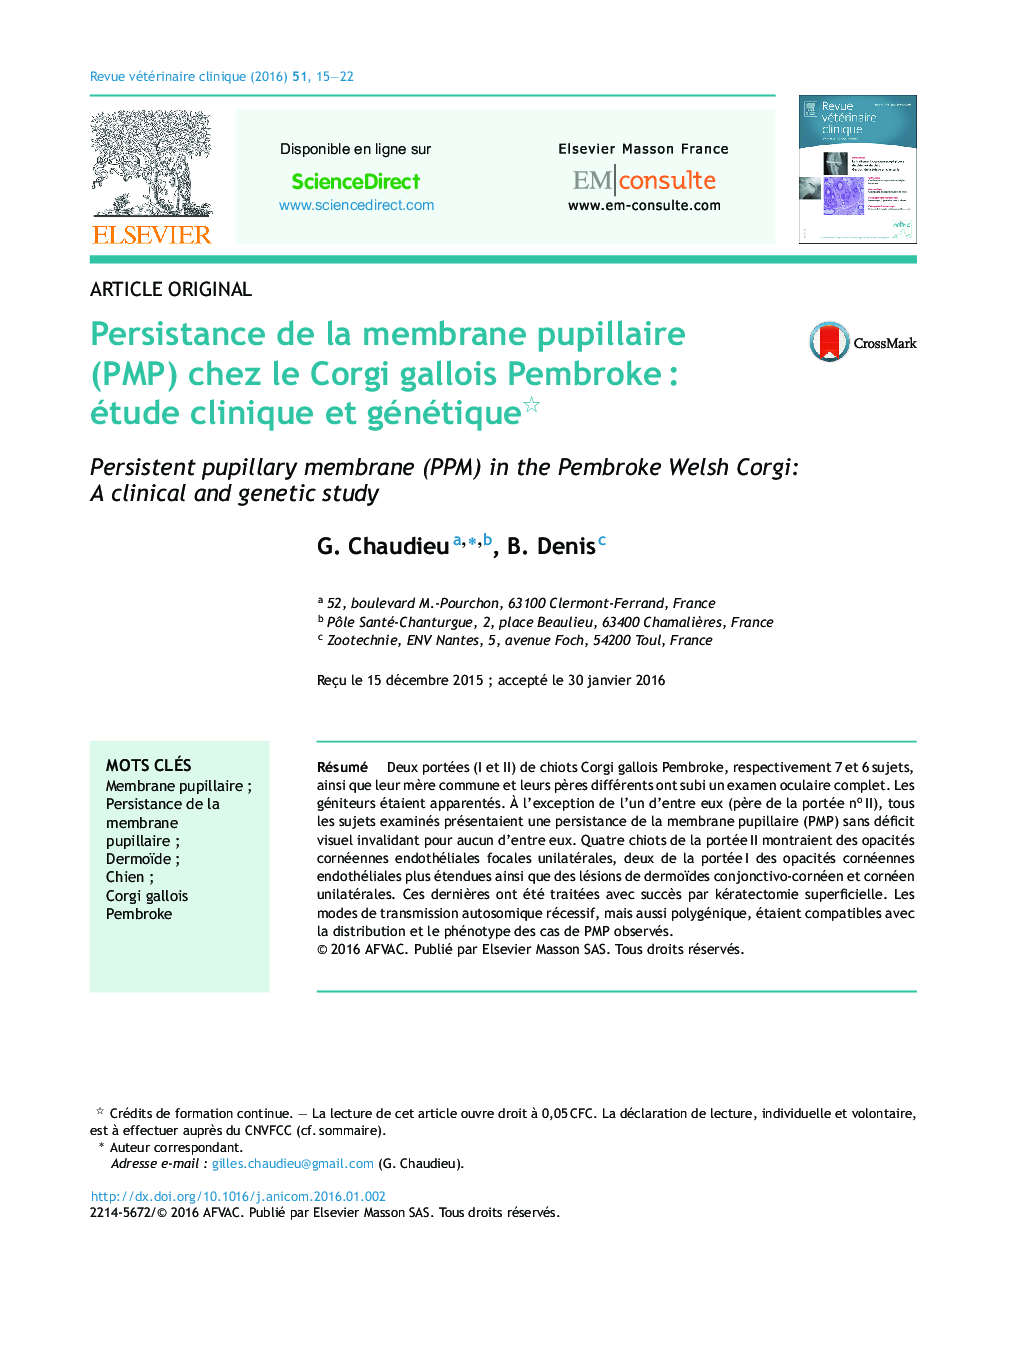 Persistance de la membrane pupillaire (PMP) chez le Corgi gallois Pembroke : étude clinique et génétique 